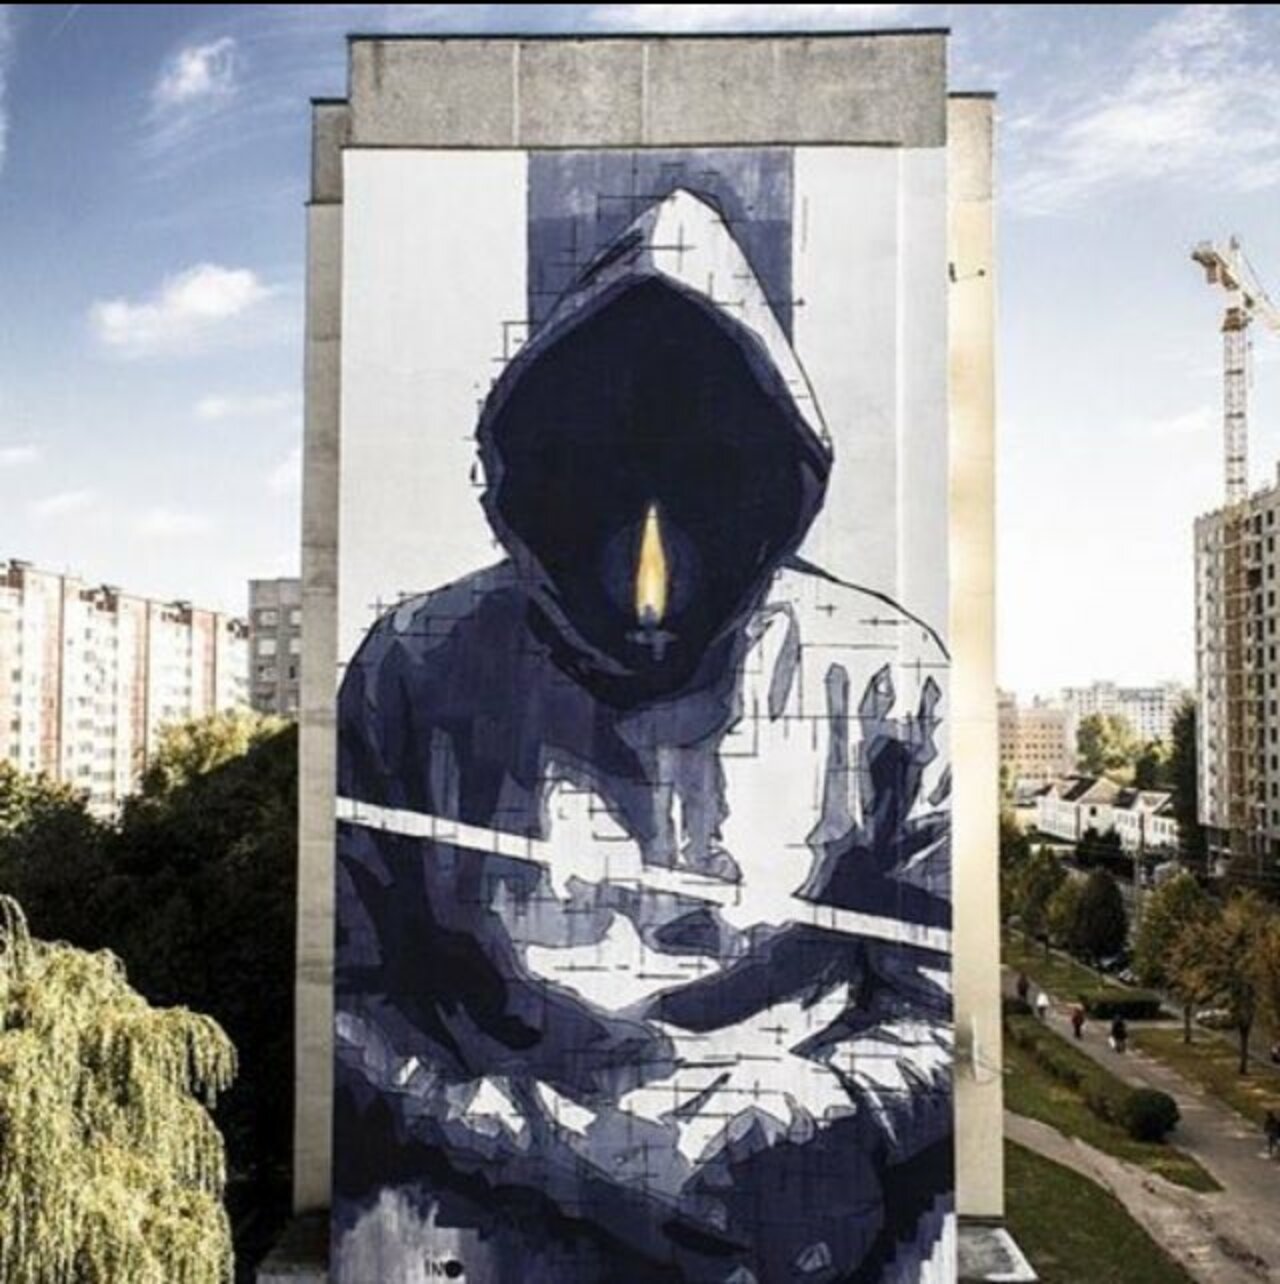 New Street Art by Inocv in Minsk#streetart #mural #art #graffiti https://t.co/ltoeZlWUjT